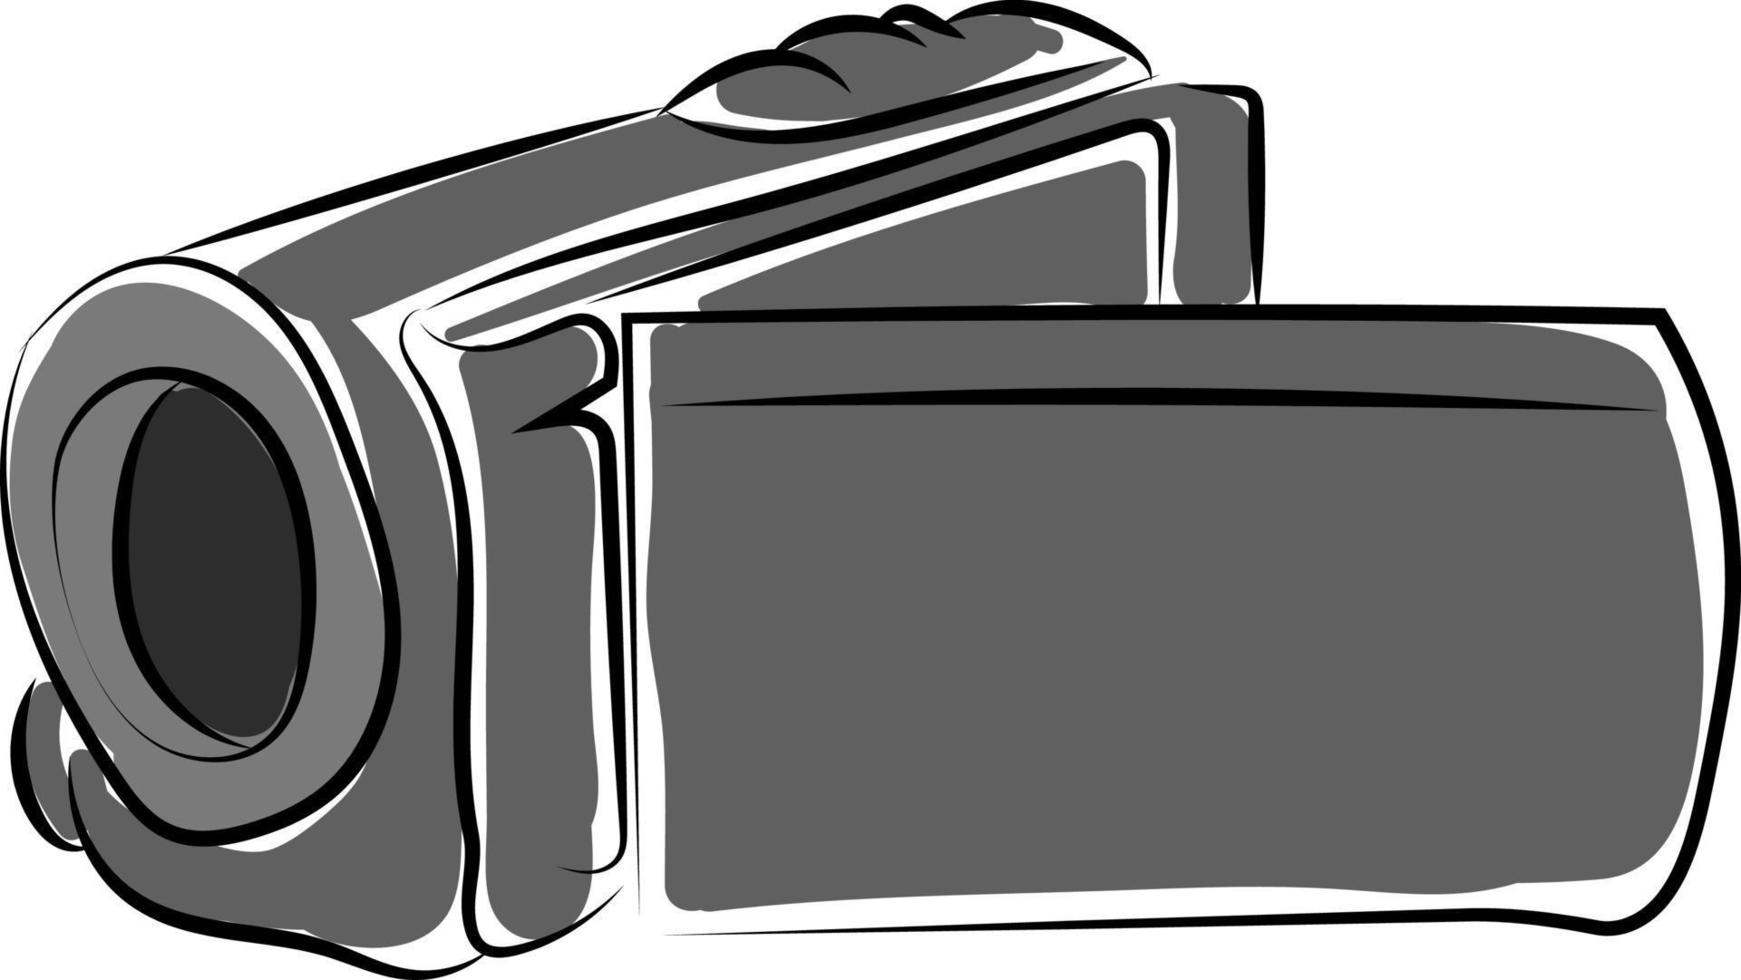 dessin de caméra vidéo, illustration, vecteur sur fond blanc.